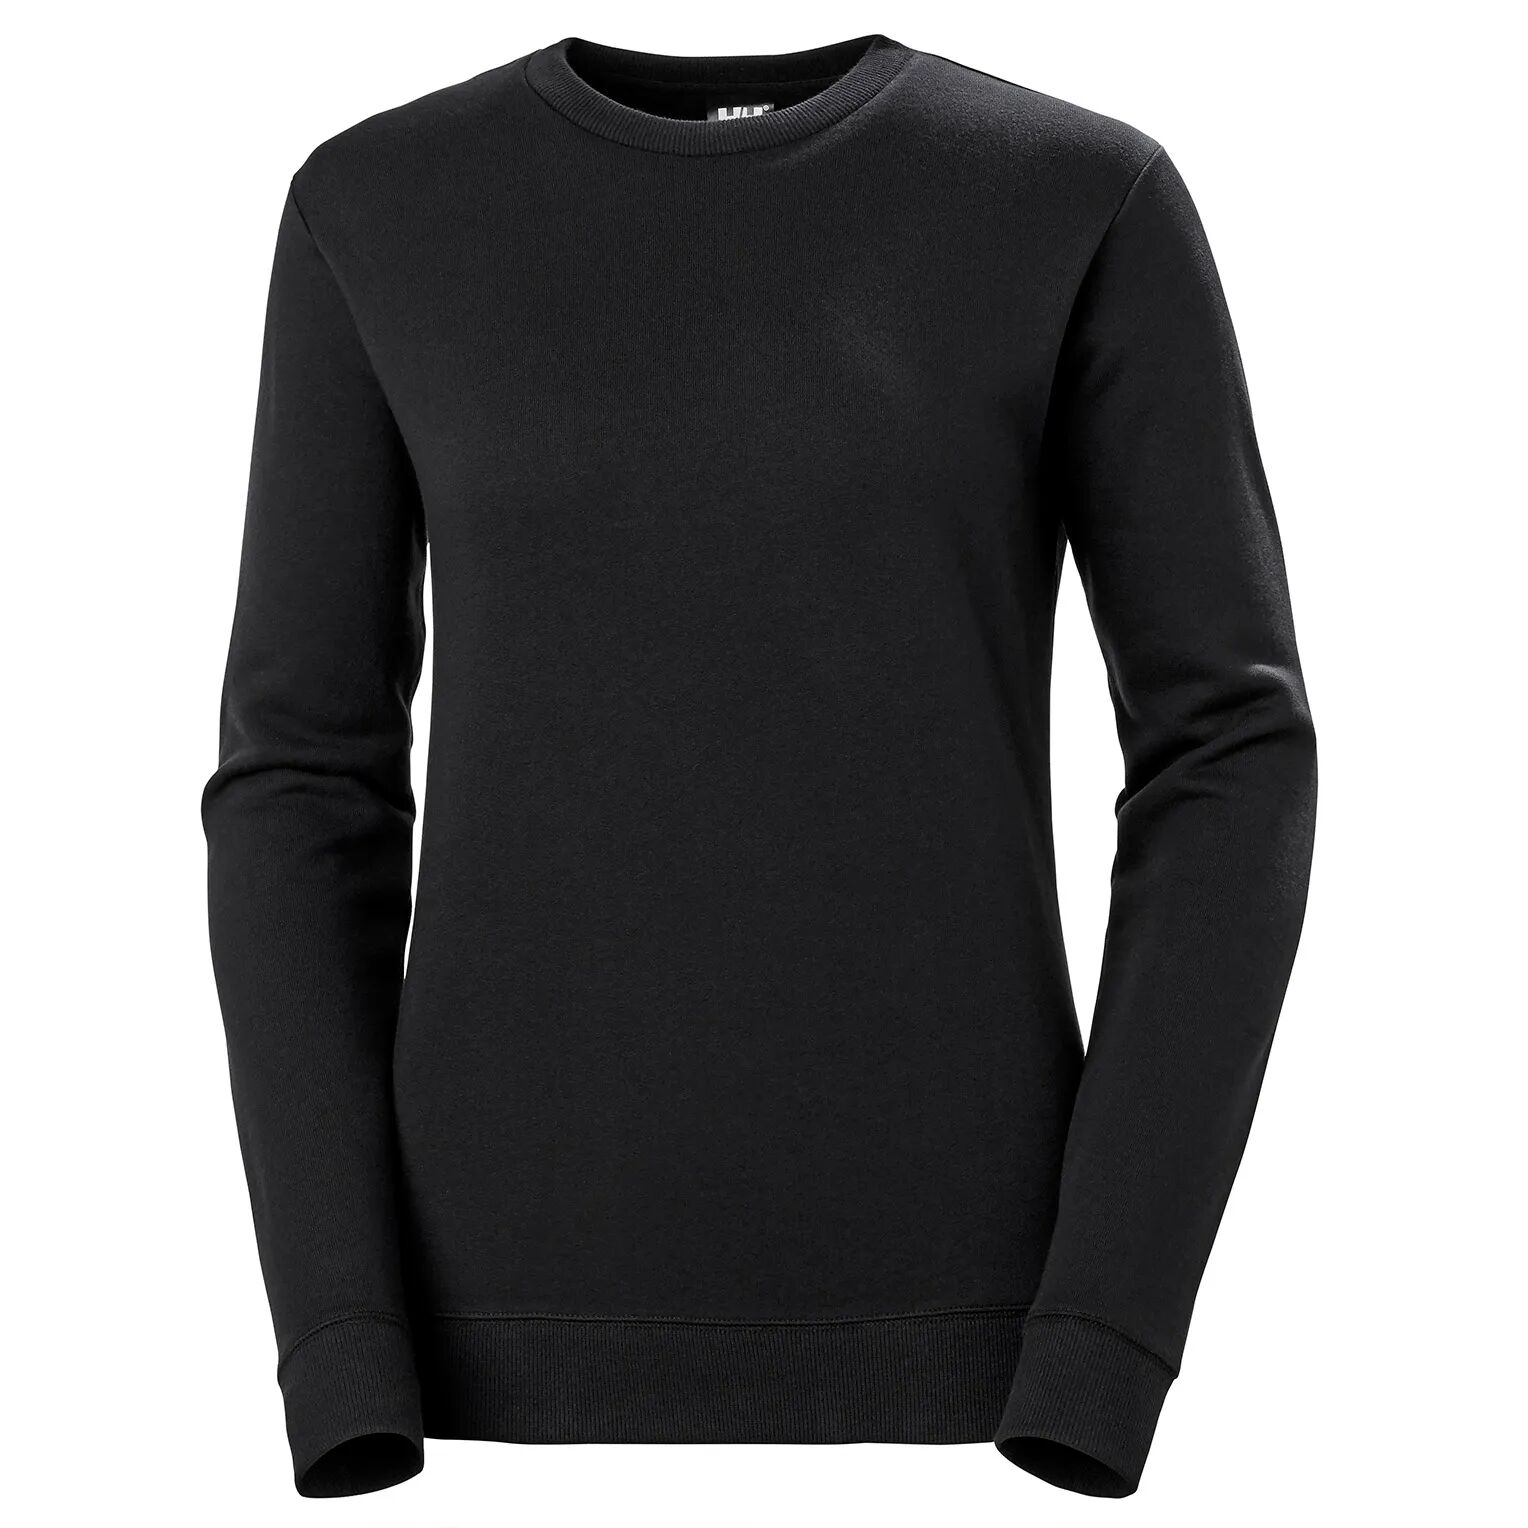 HH Workwear Helly Hansen WorkwearWomen’s Manchester Cotton Sweater Black S